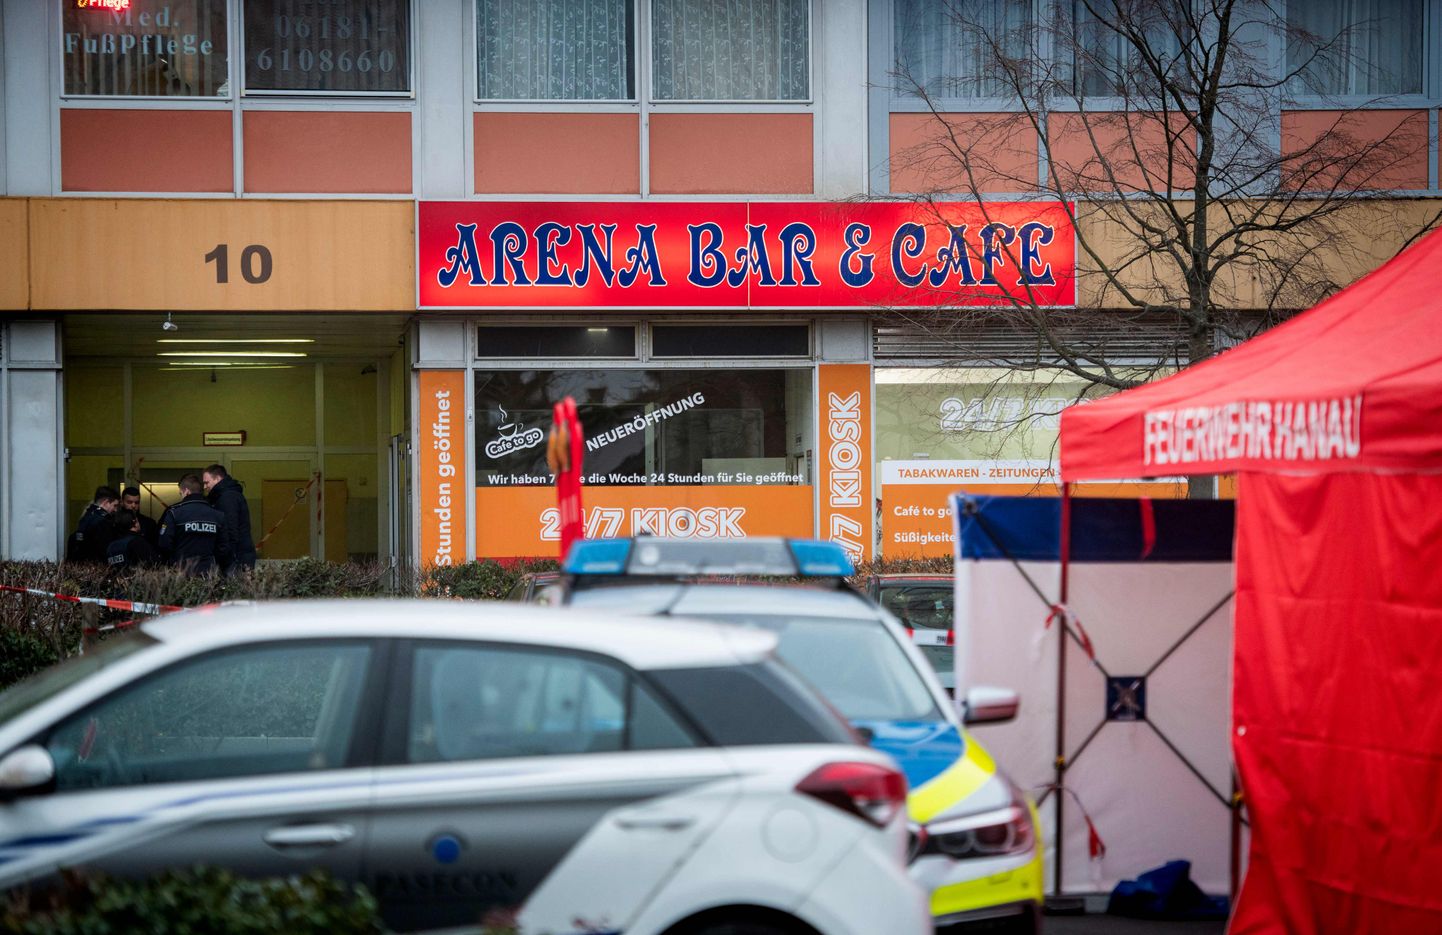 Ründaja tappis eile Saksamaal kümme inimest. Üks rünnakupaik oli Arena Bar & Cafe Hanaus.